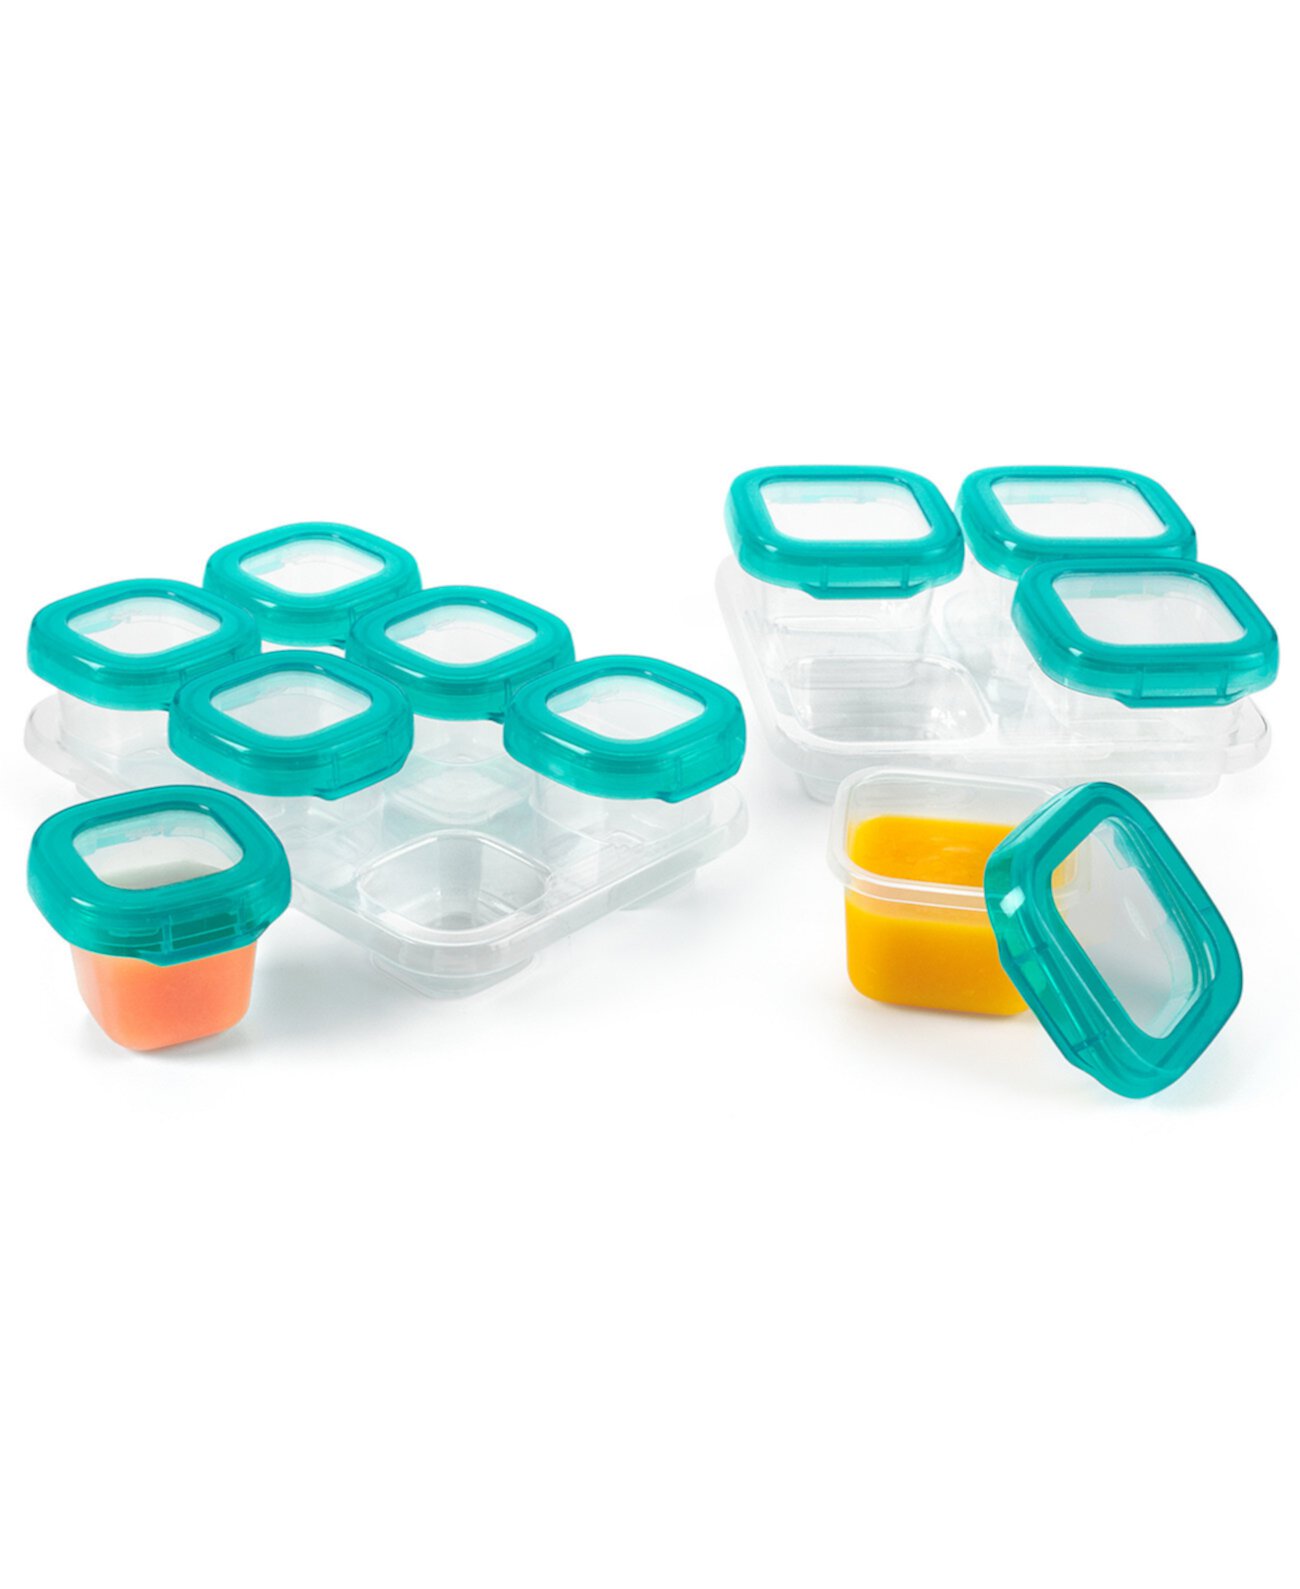 Tot Glass Baby Blocks 12 шт. Набор контейнеров для хранения продуктов в морозильной камере с лотками Oxo